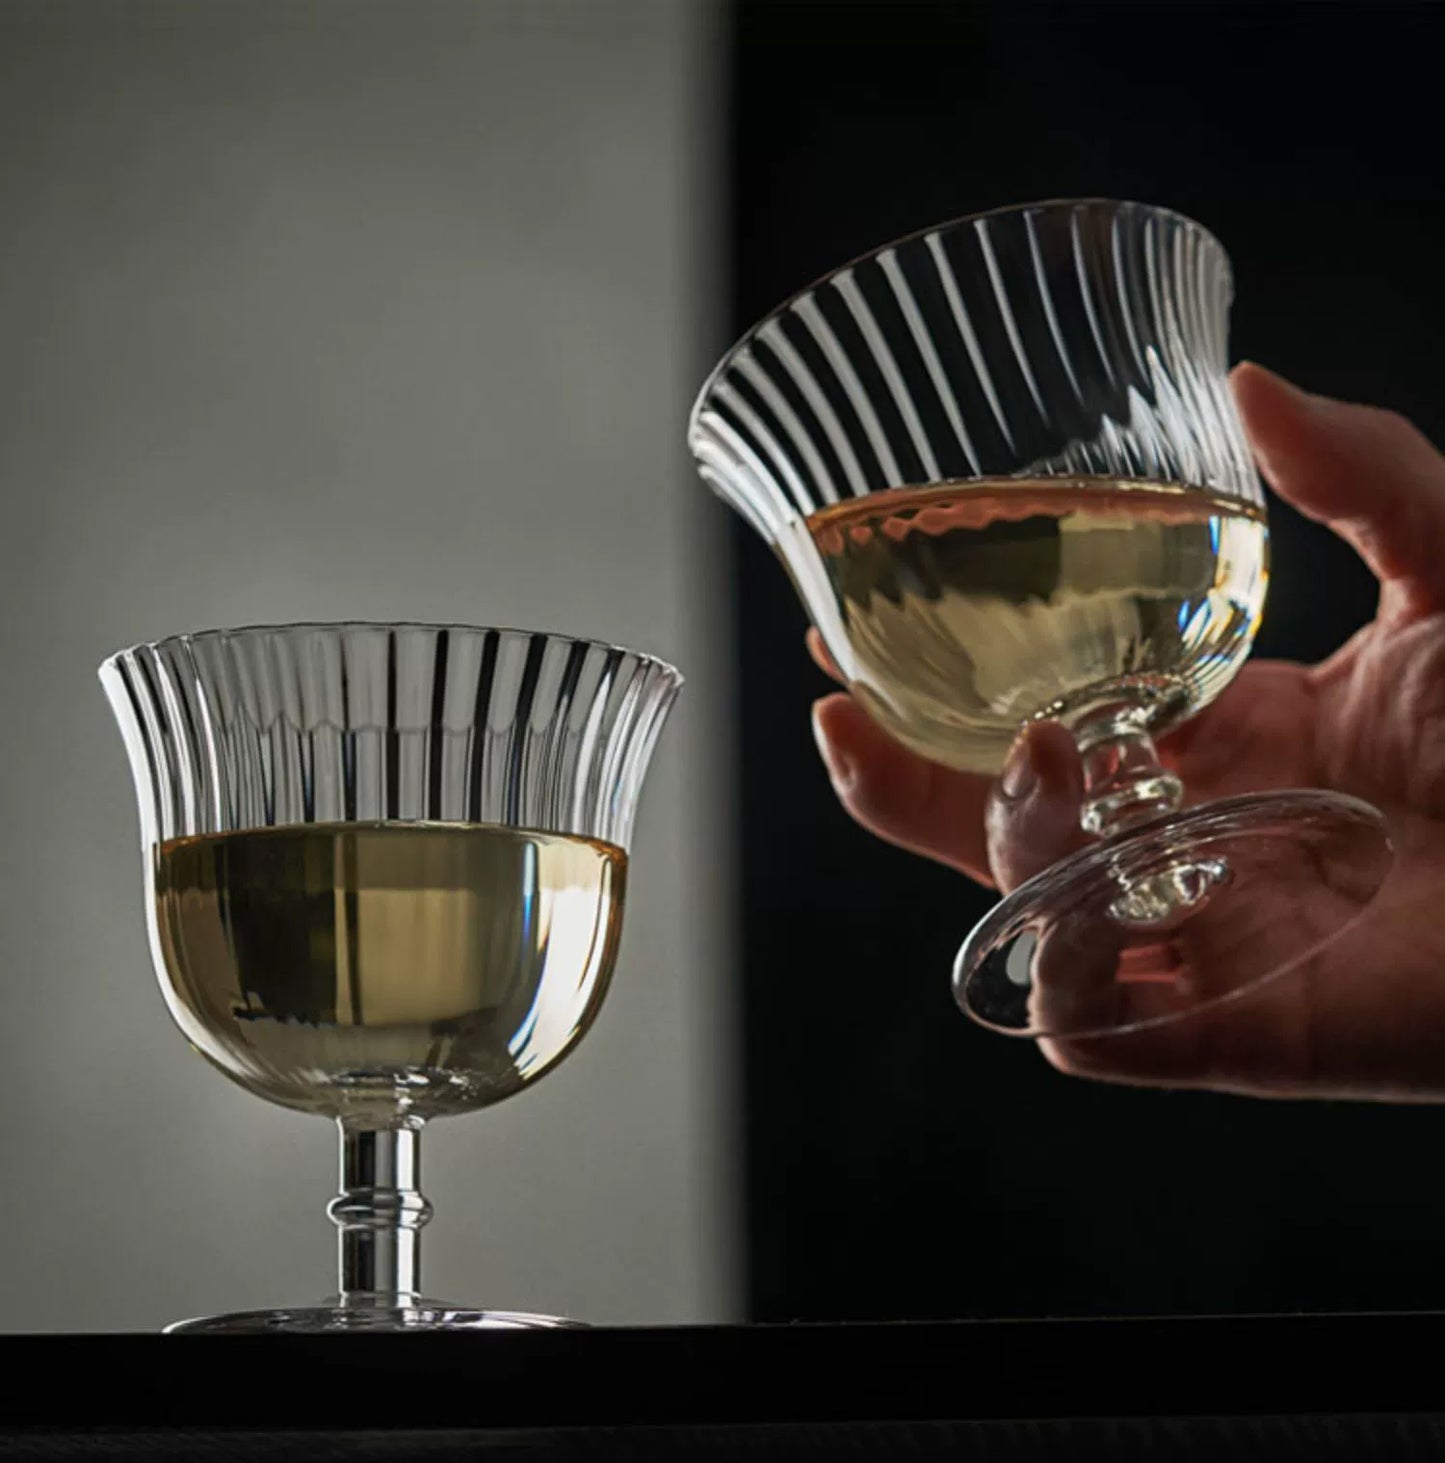 Estelle Moscato Corrugated Wine Glass from RAZEND